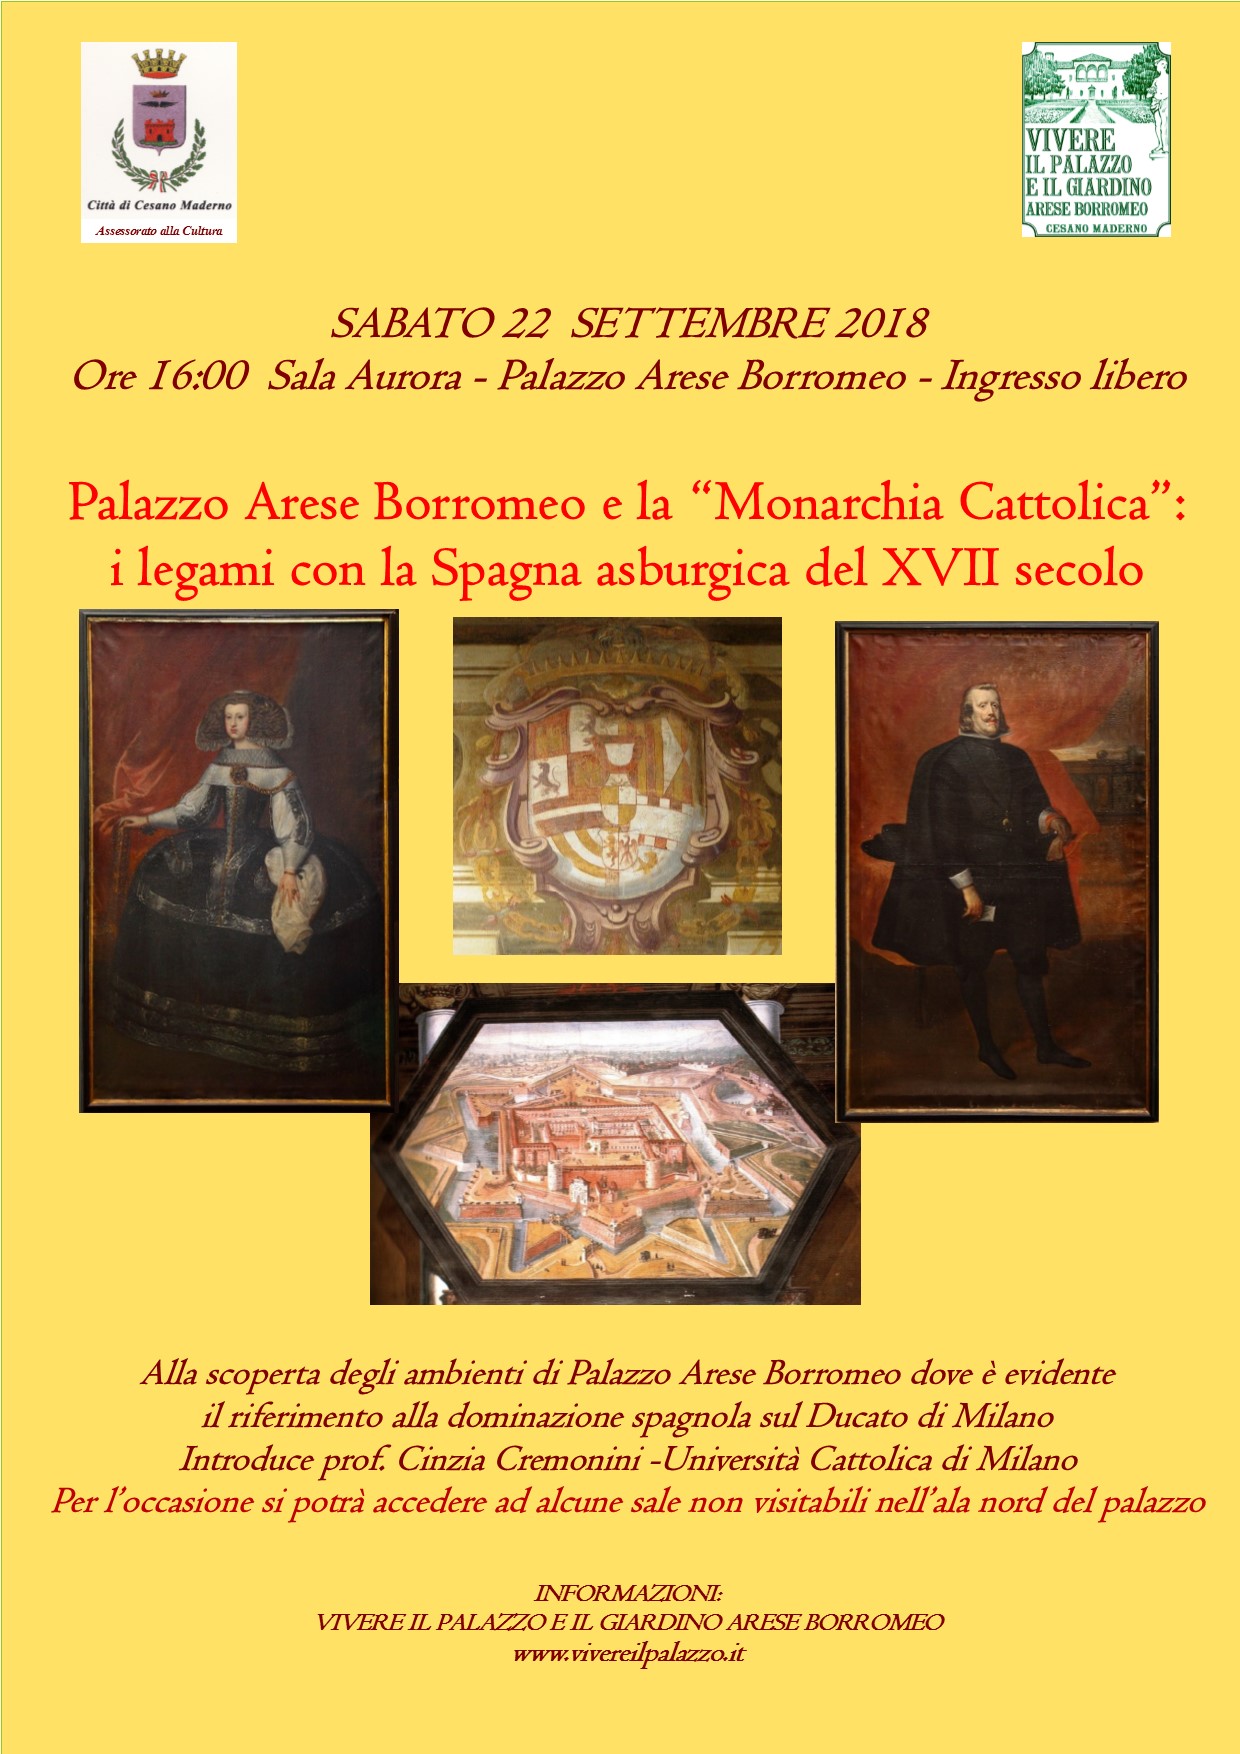 22 settembre - Palazzo Arese Borromeo e la Monarchia Cattolica - I legami con la Spagna asburgica del XVII Secolo